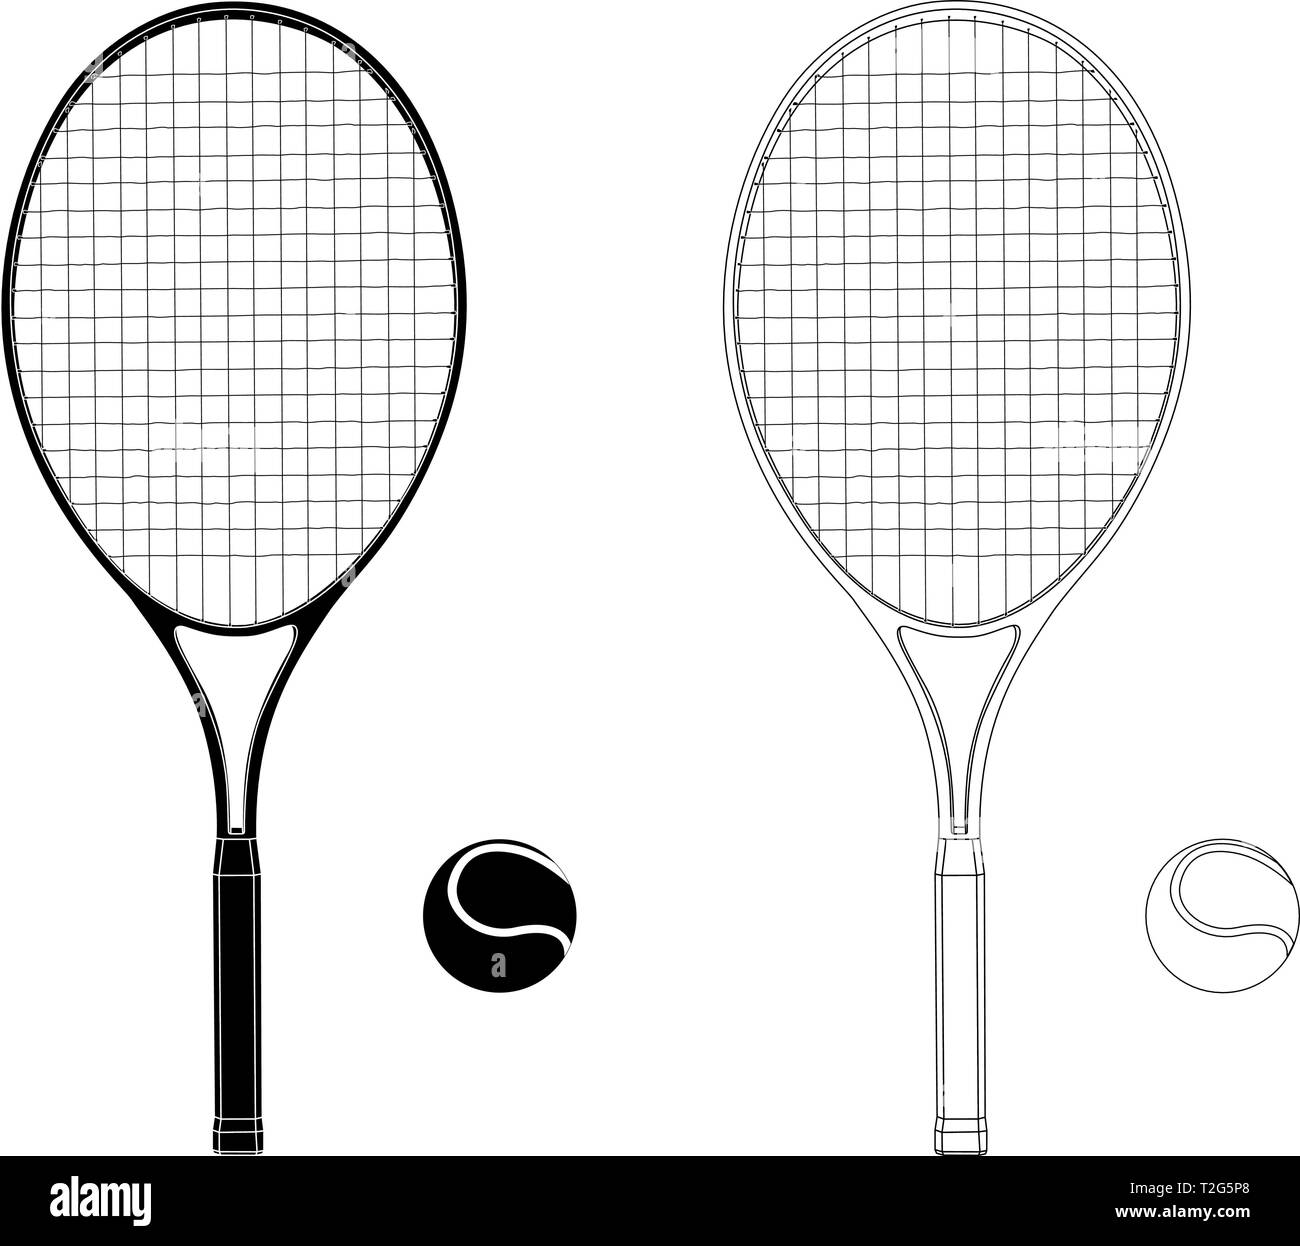 Raquette de tennis avec une balle. Télévision dessin à la main. Vector illustration isolé sur fond blanc Illustration de Vecteur